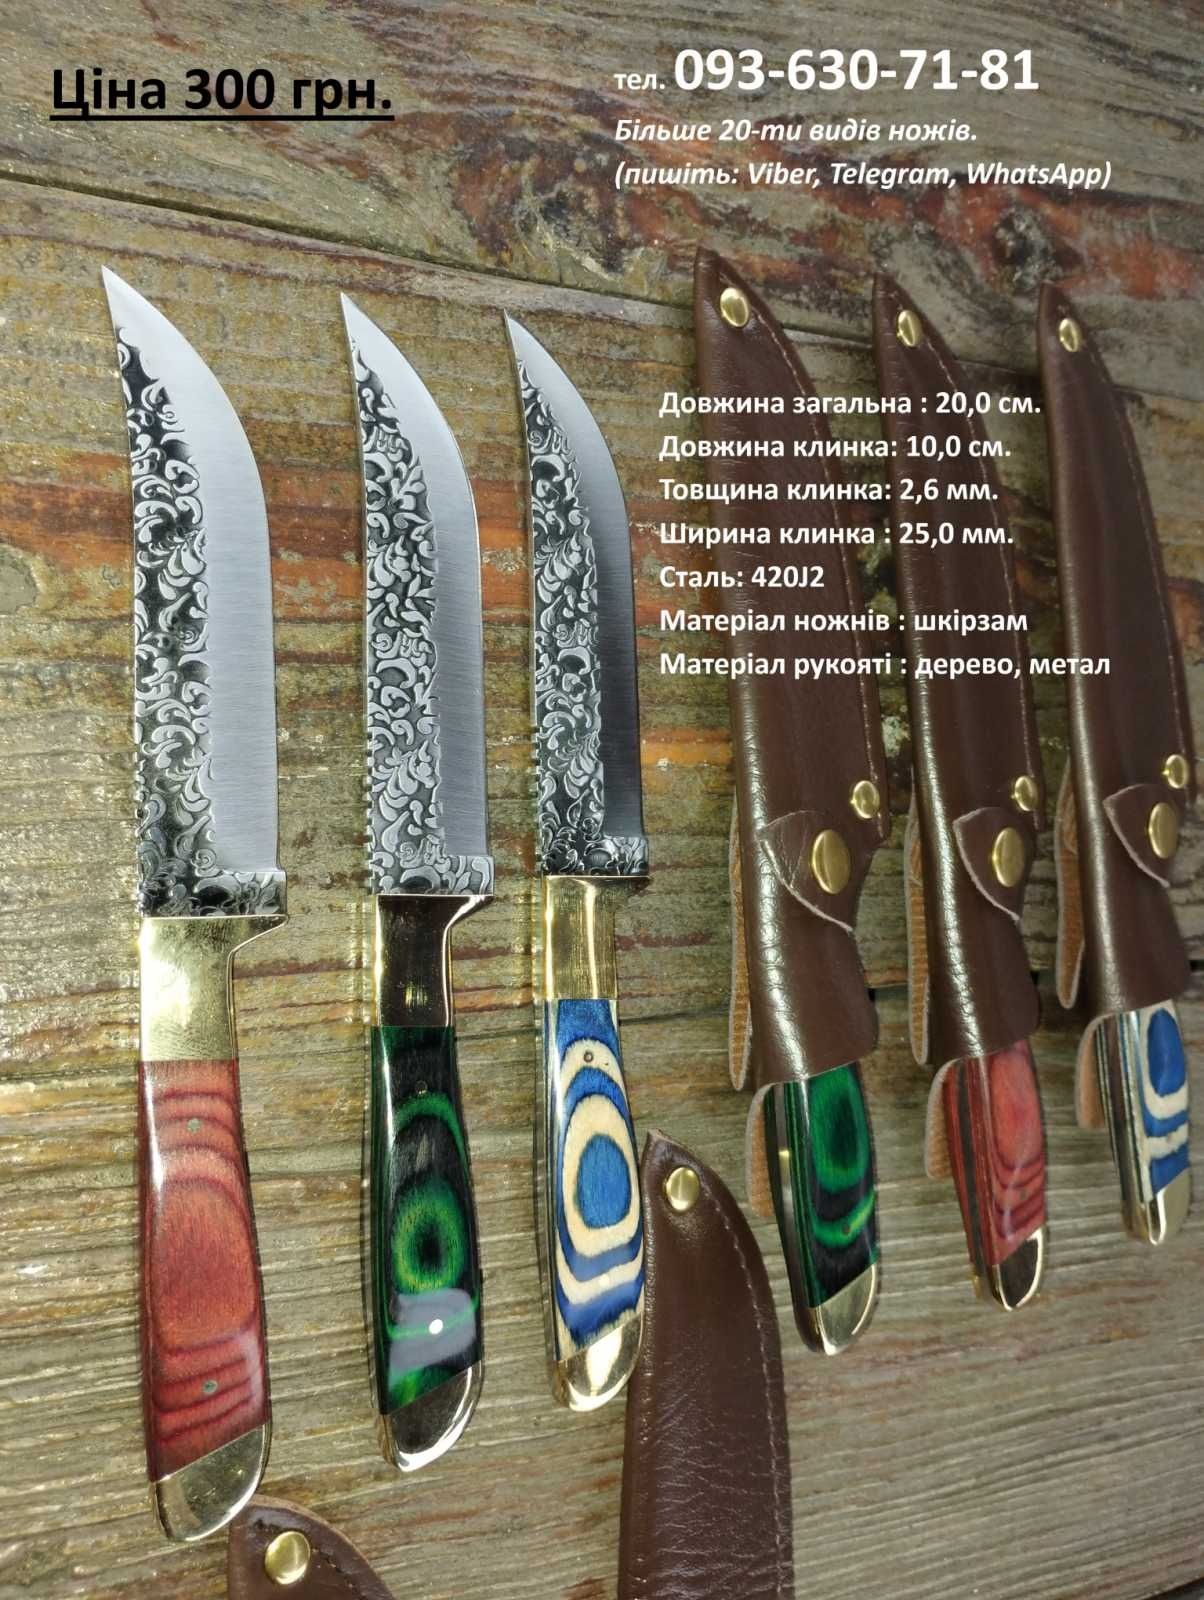 Ножі в наявності більше 20ти видів. (туристичний, кухонний).